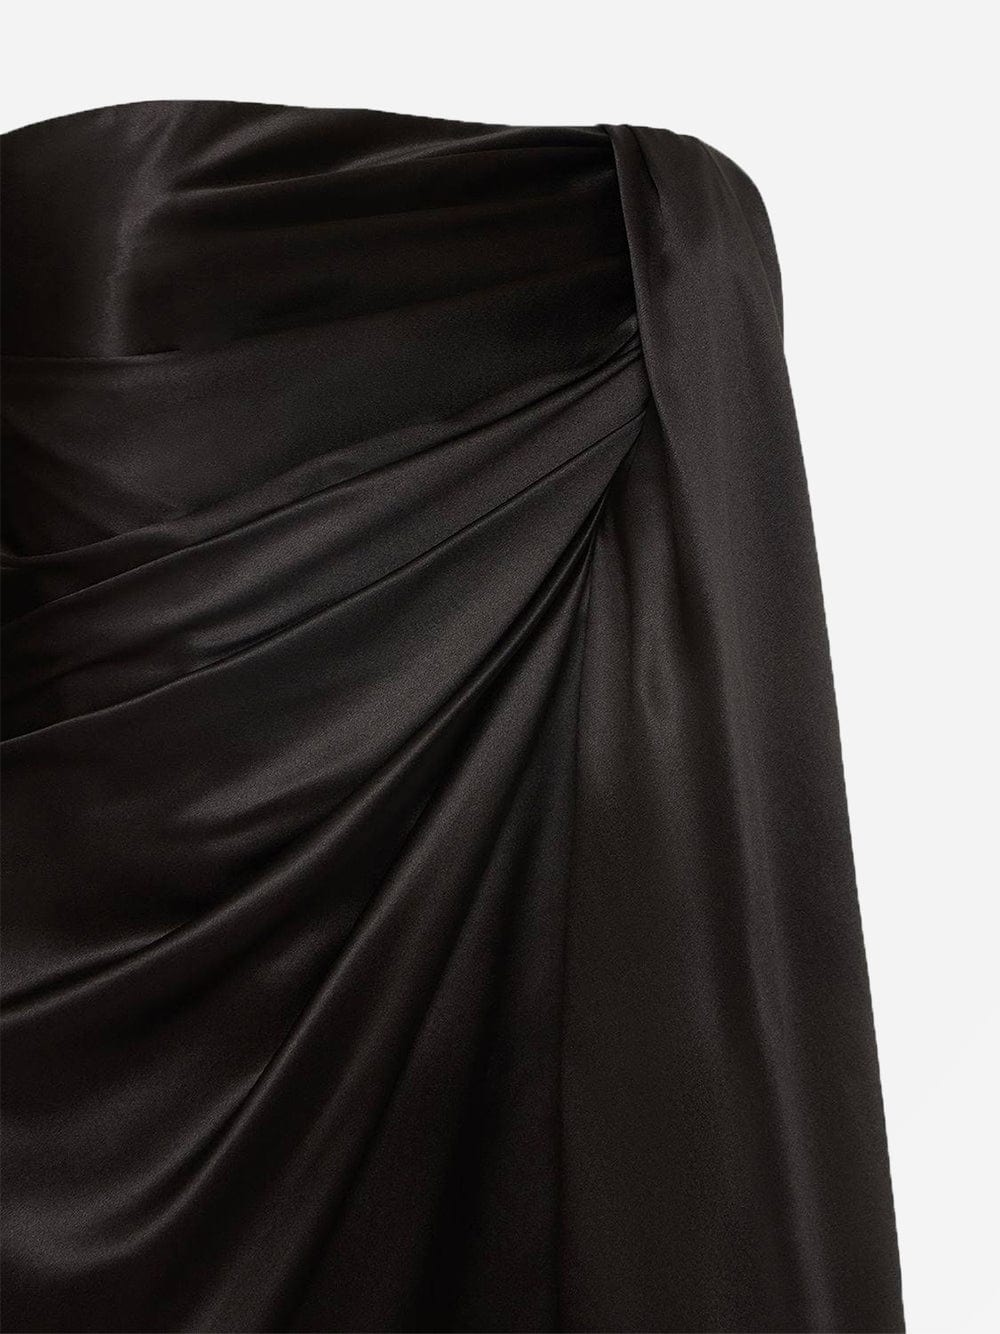 Dolce & Gabbana Women Strapless Mini Dress 44 8 Black Asymmetric